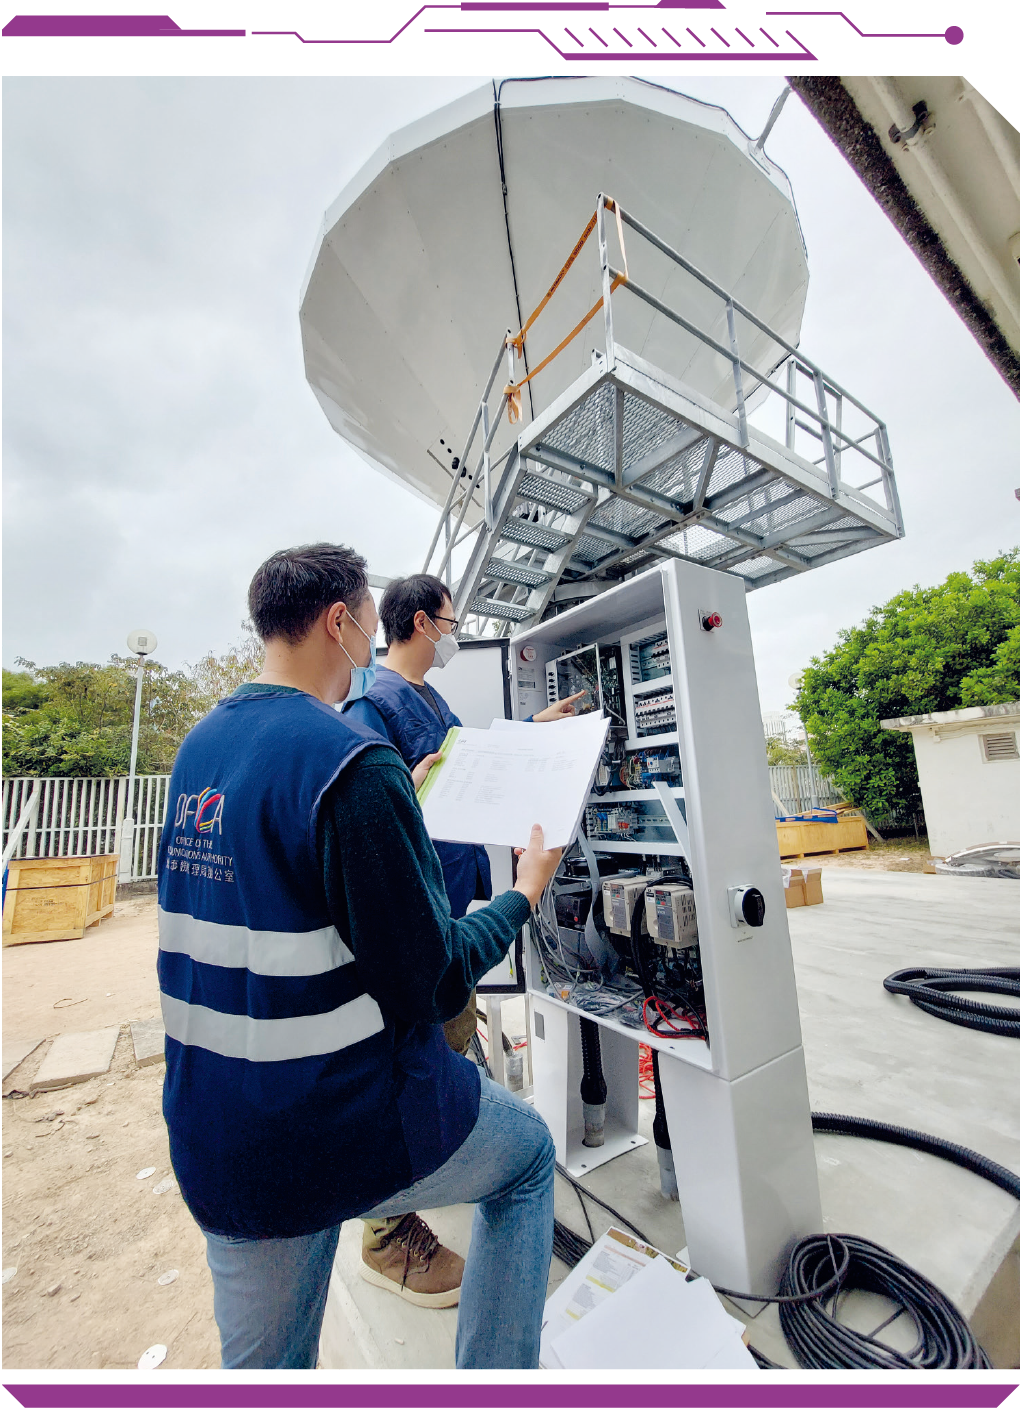 通讯办职员在观塘视察卫星广播监察系统的更换进度。